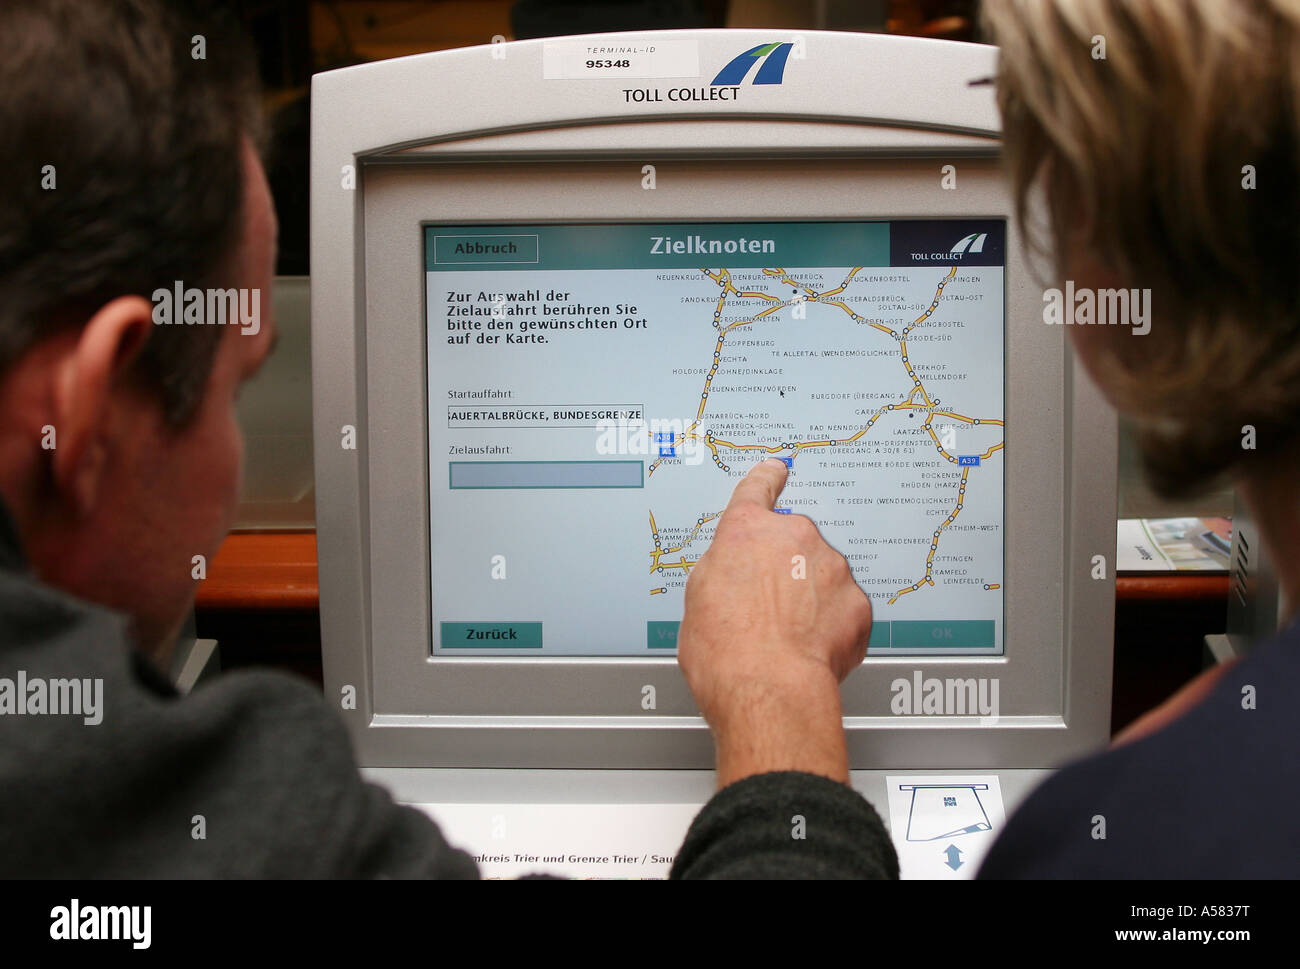 Terminal pour calculer le numéro sans frais, que les conducteurs de camions doivent payer pour utiliser l'autoroute allemande Banque D'Images